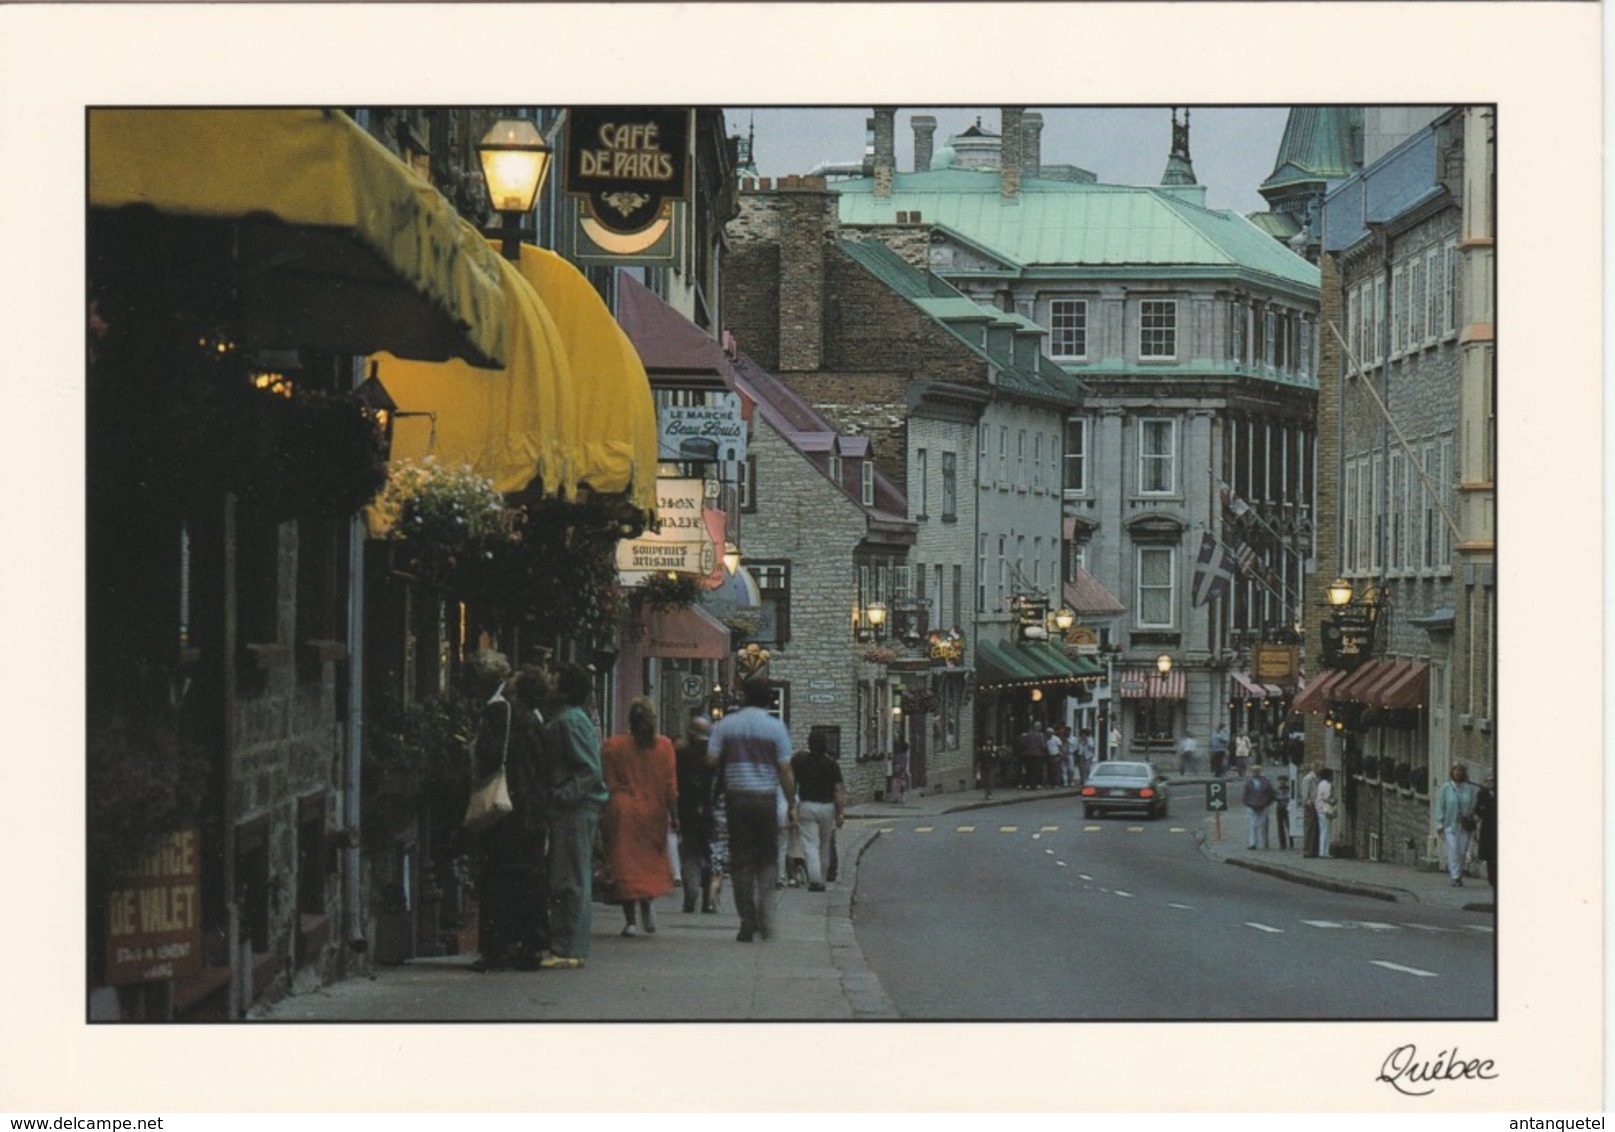 Lot de 8 grandes cartes postales—CPM—Istanbul—Québec—Peintres—Années 90/00